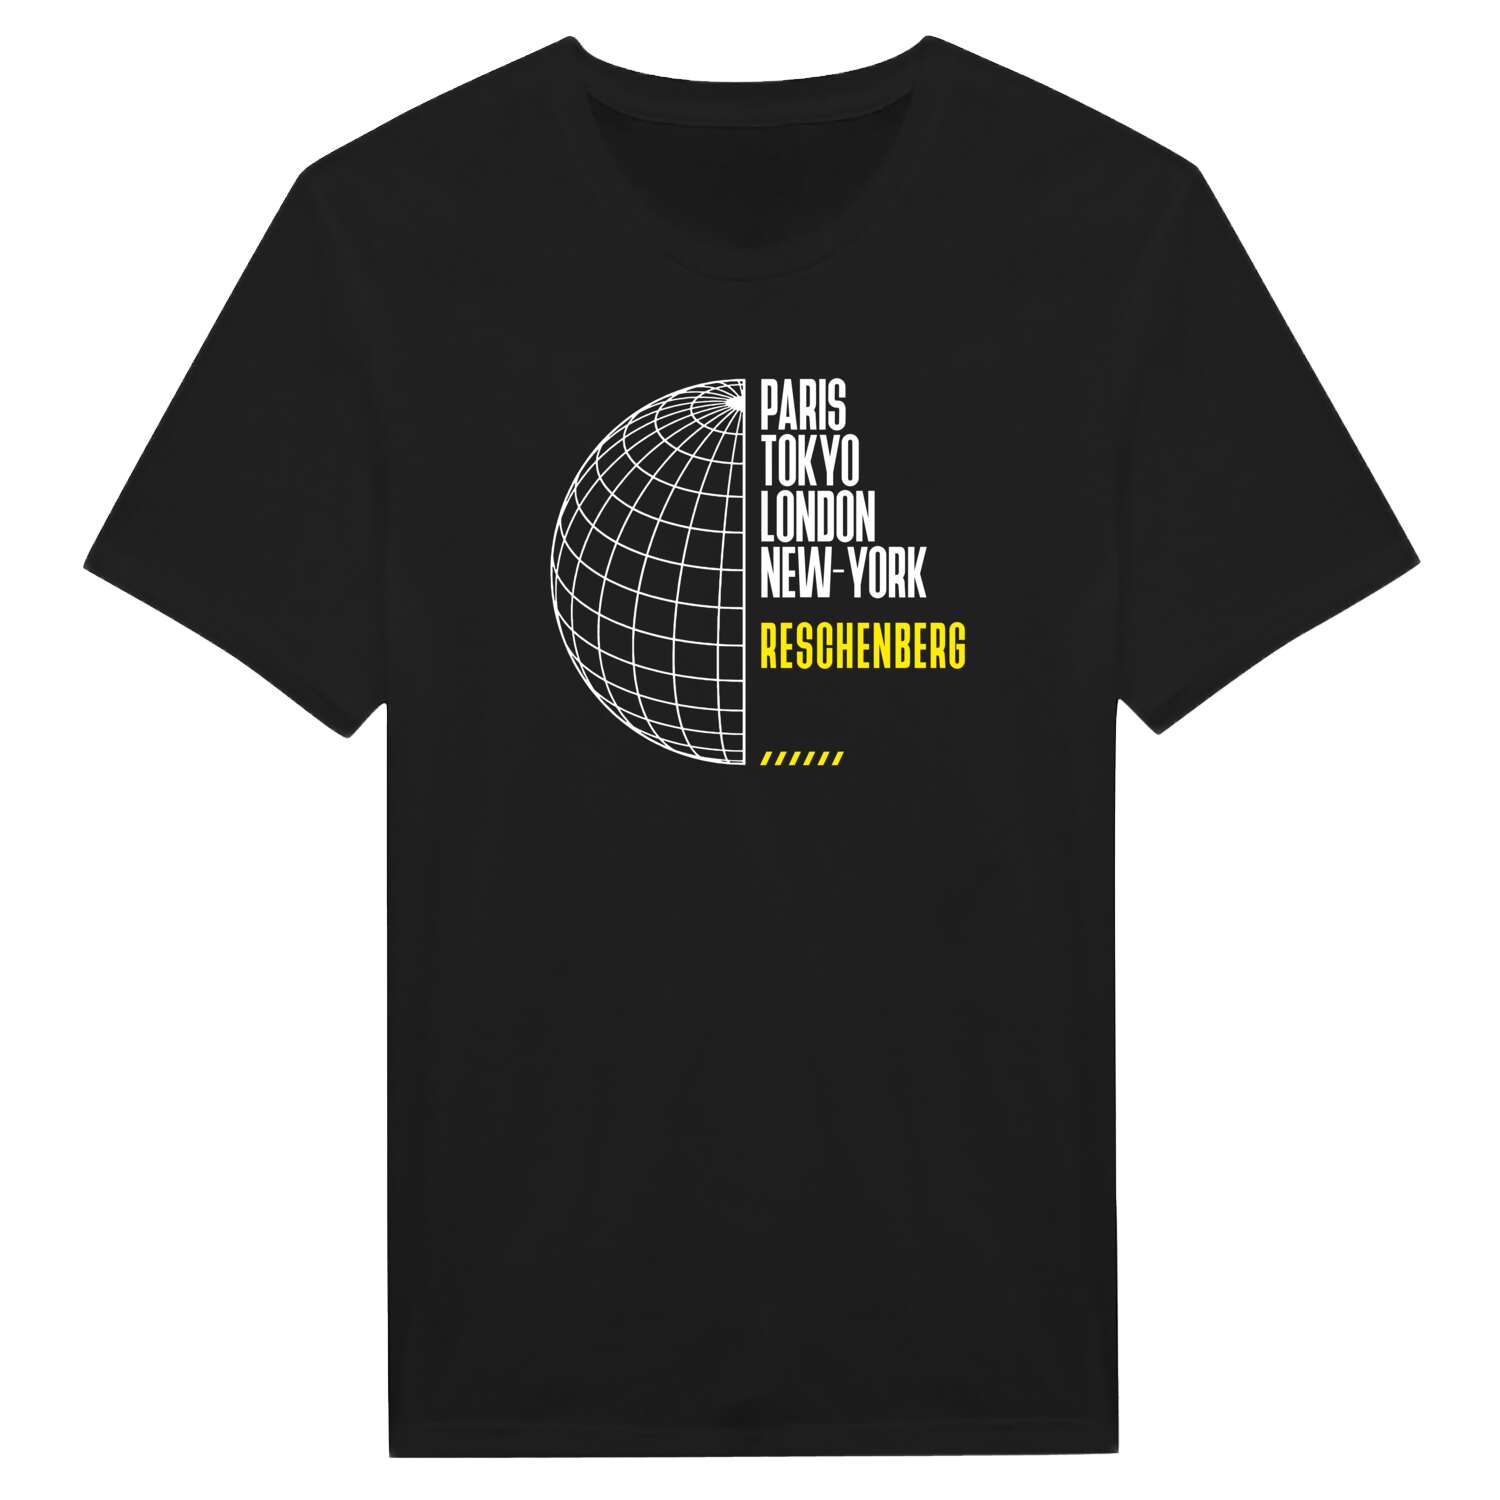 Reschenberg T-Shirt »Paris Tokyo London«